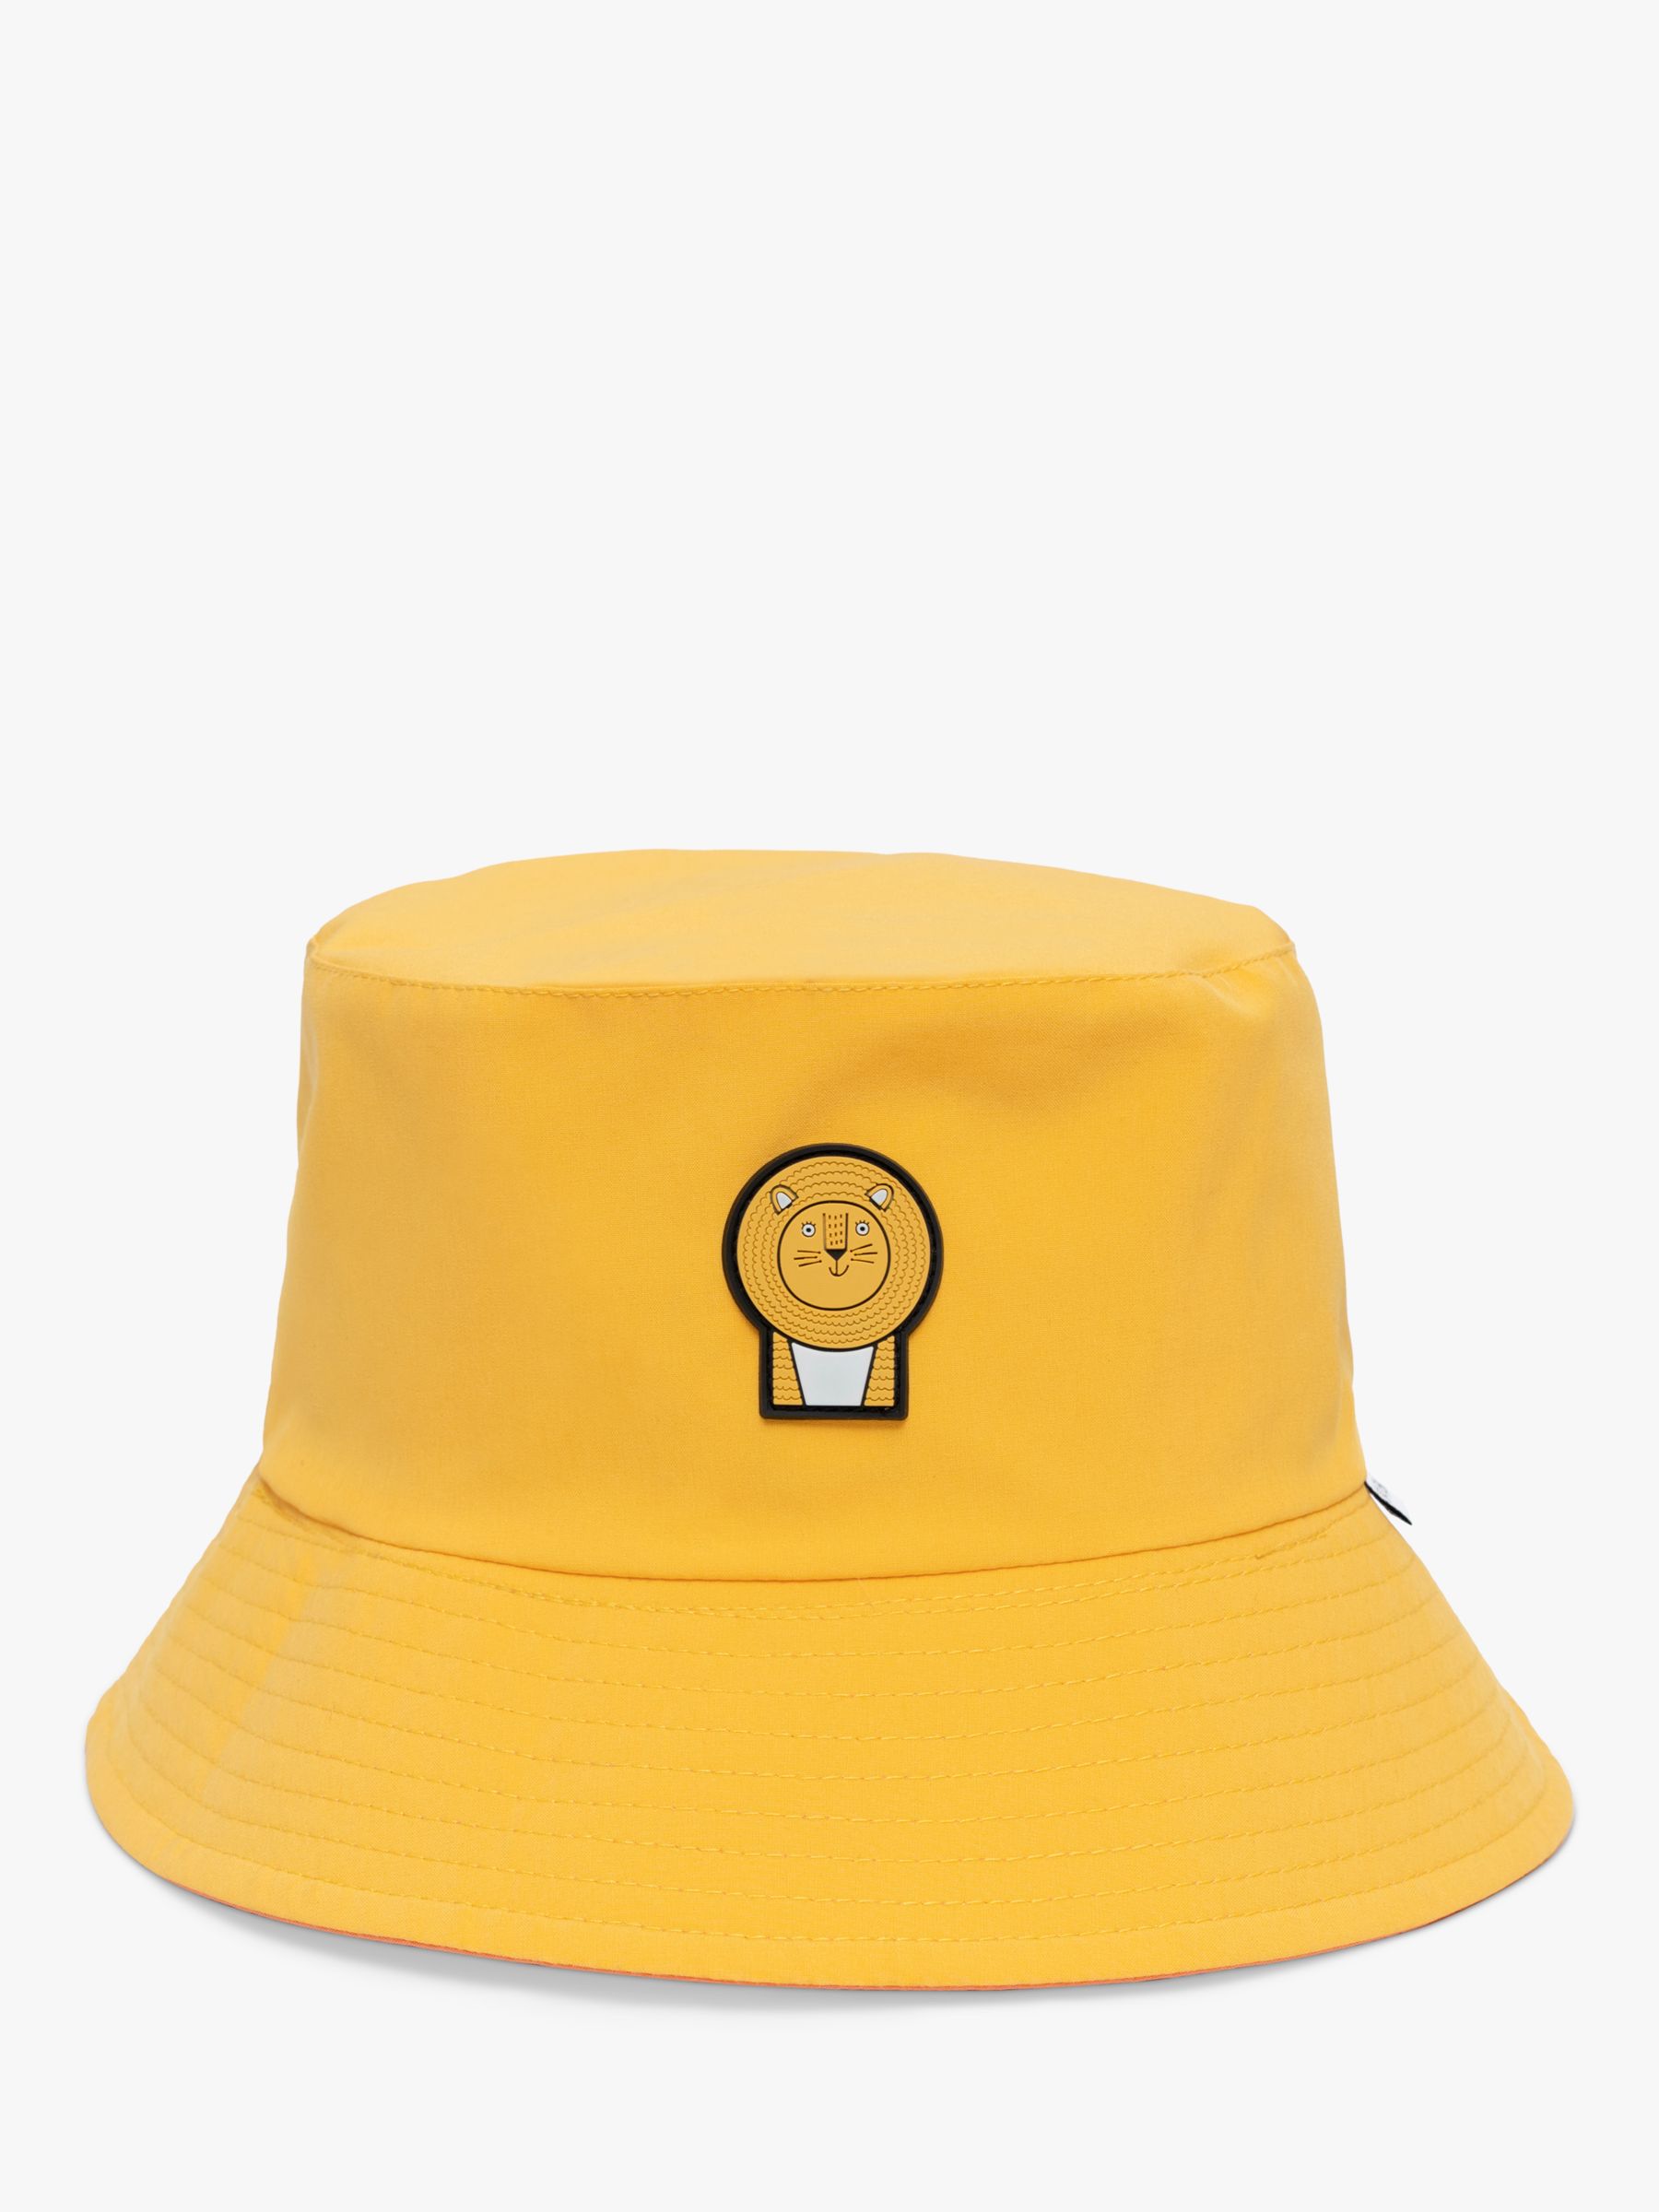 Buy Roarsome Kids' Waterproof Reversible Bucket Hat, Yellow Online at johnlewis.com